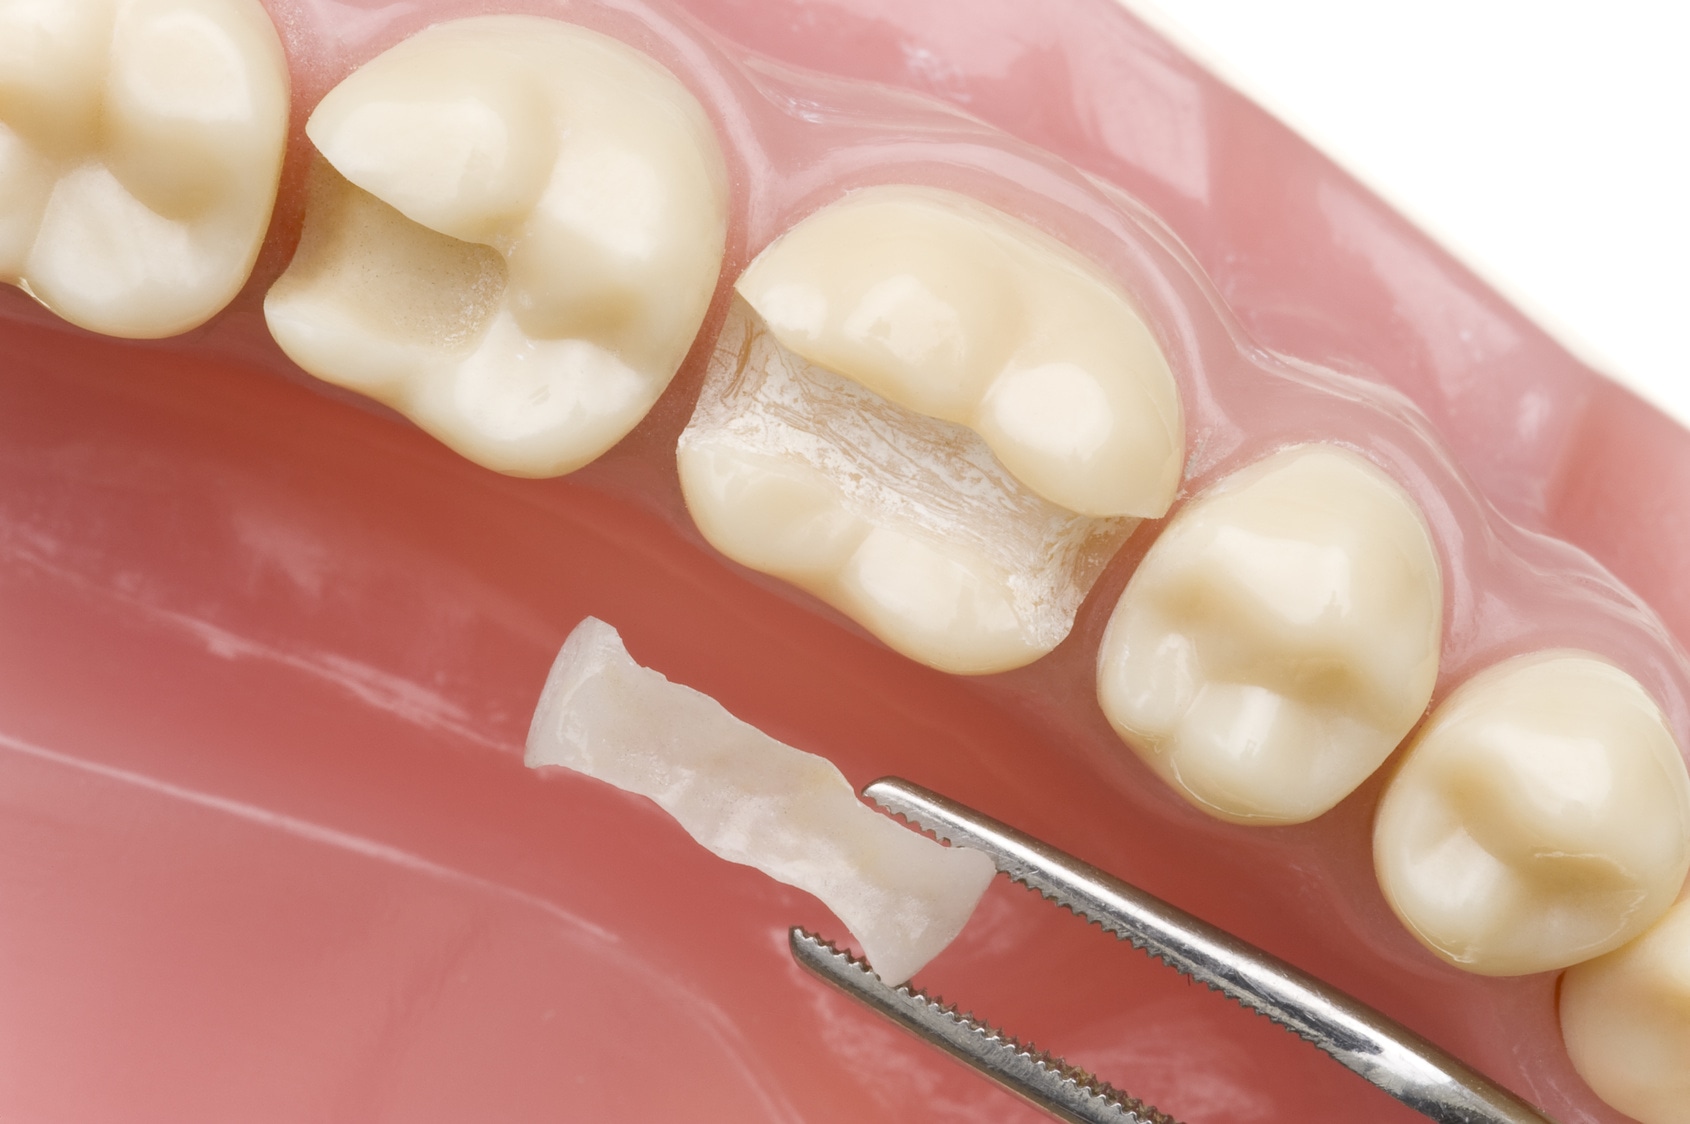 Реставрация зубов керамическими вкладками | Стоматология в Химках | Стоматология Кантри Парк